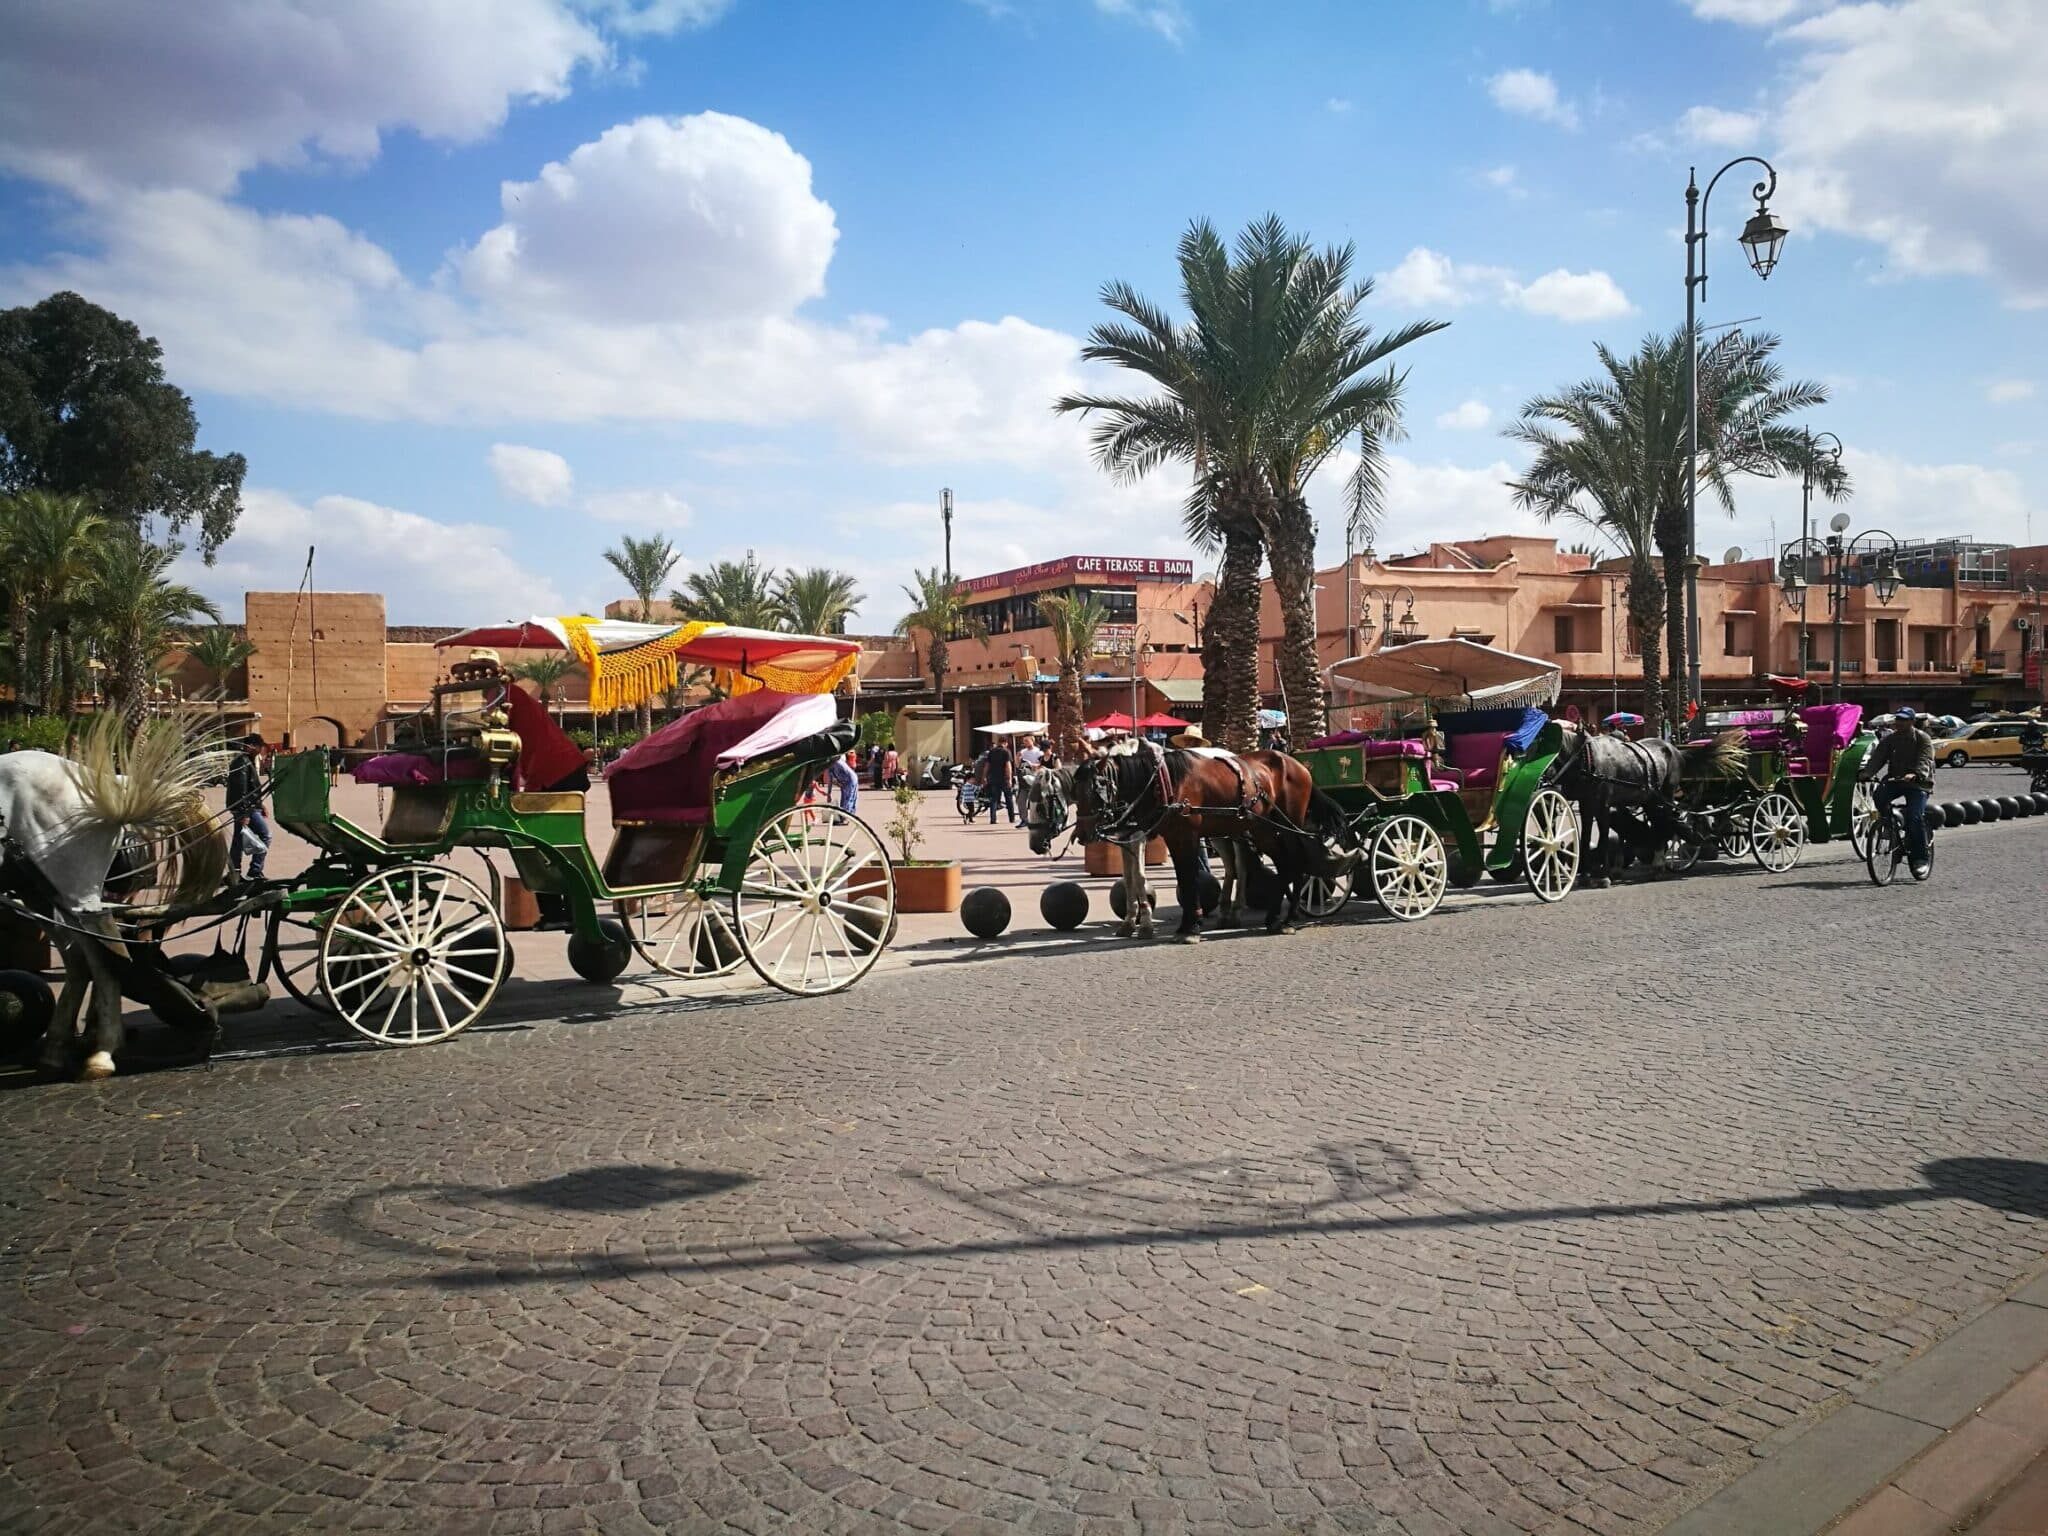 5 Days in Marrakech